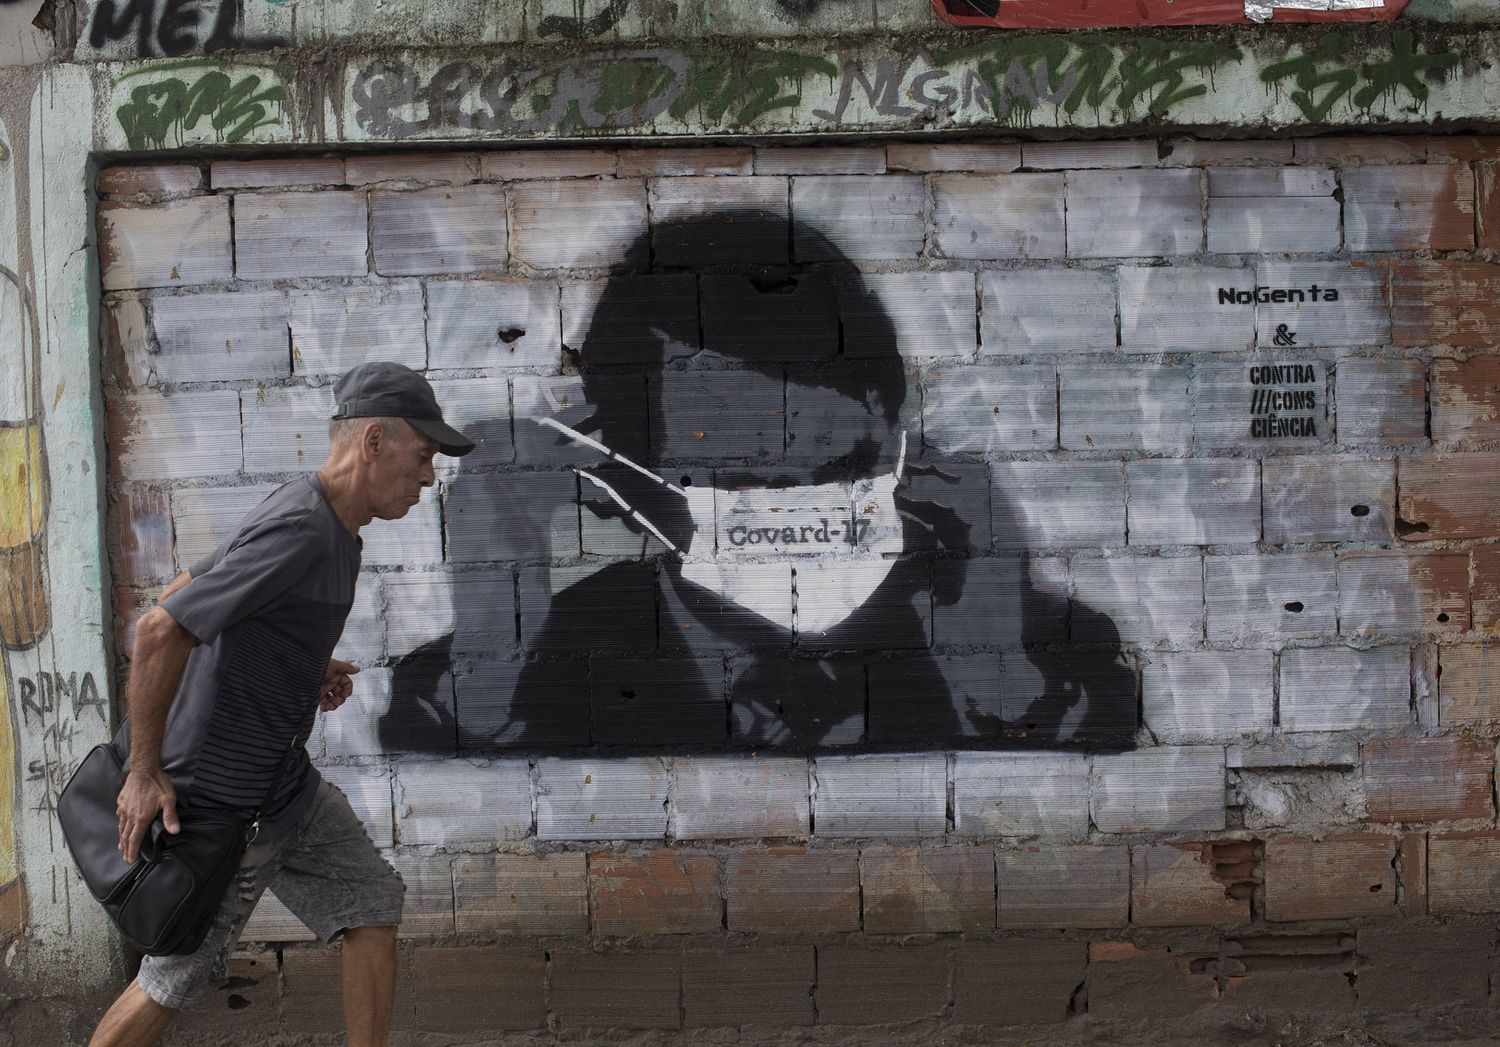 Um homem passa por um grafitti de Jair Bolsonaro durante a pandemia de coronavírus, no Rio de Janeiro, nesta terça-feira.